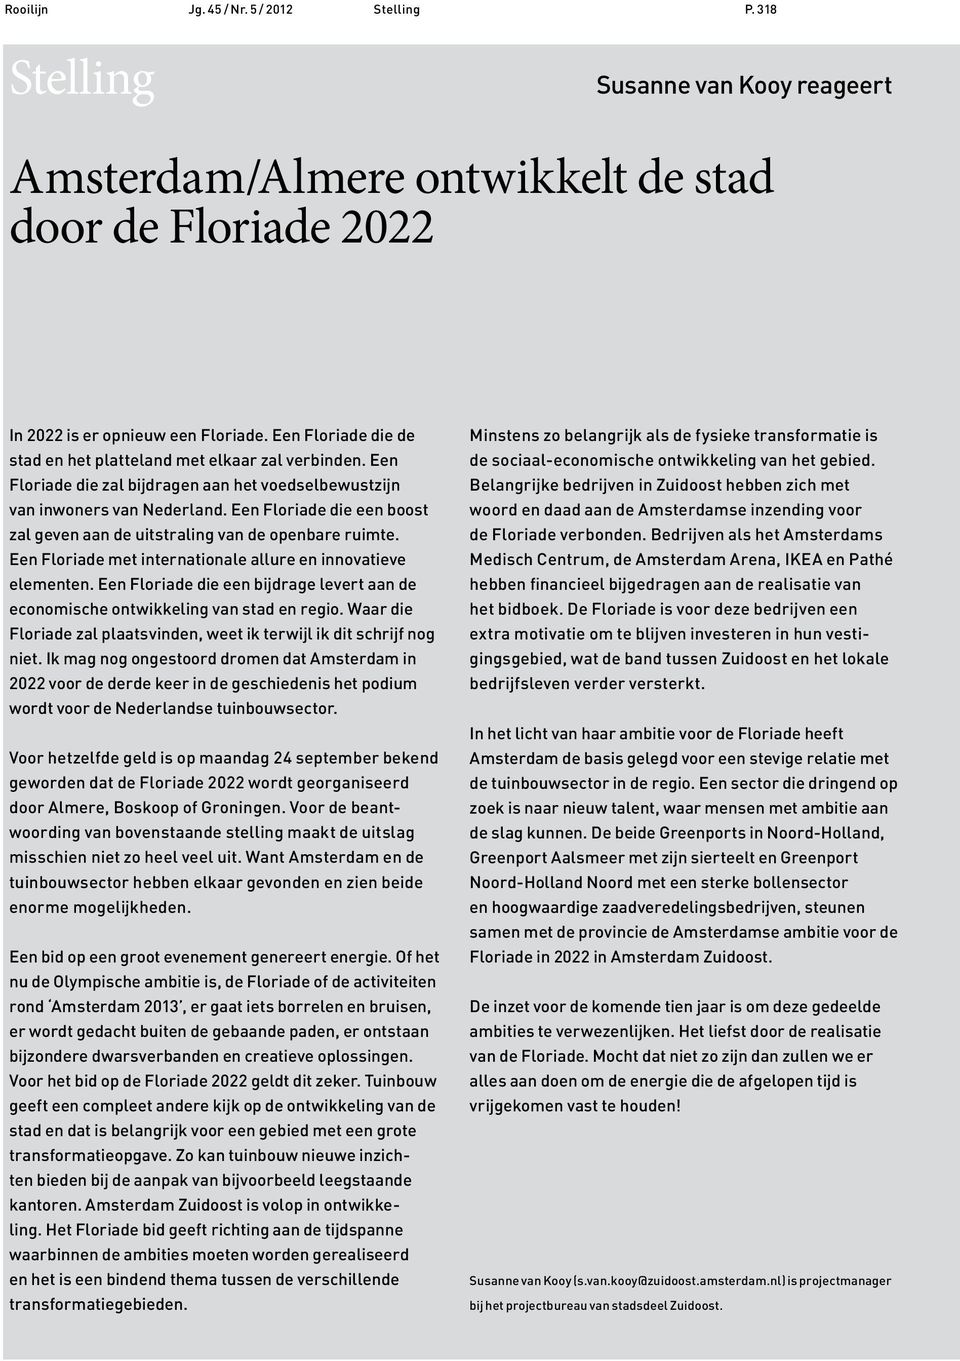 Een Floriade die een boost zal geven aan de uitstraling van de openbare ruimte. Een Floriade met internationale allure en innovatieve elementen.